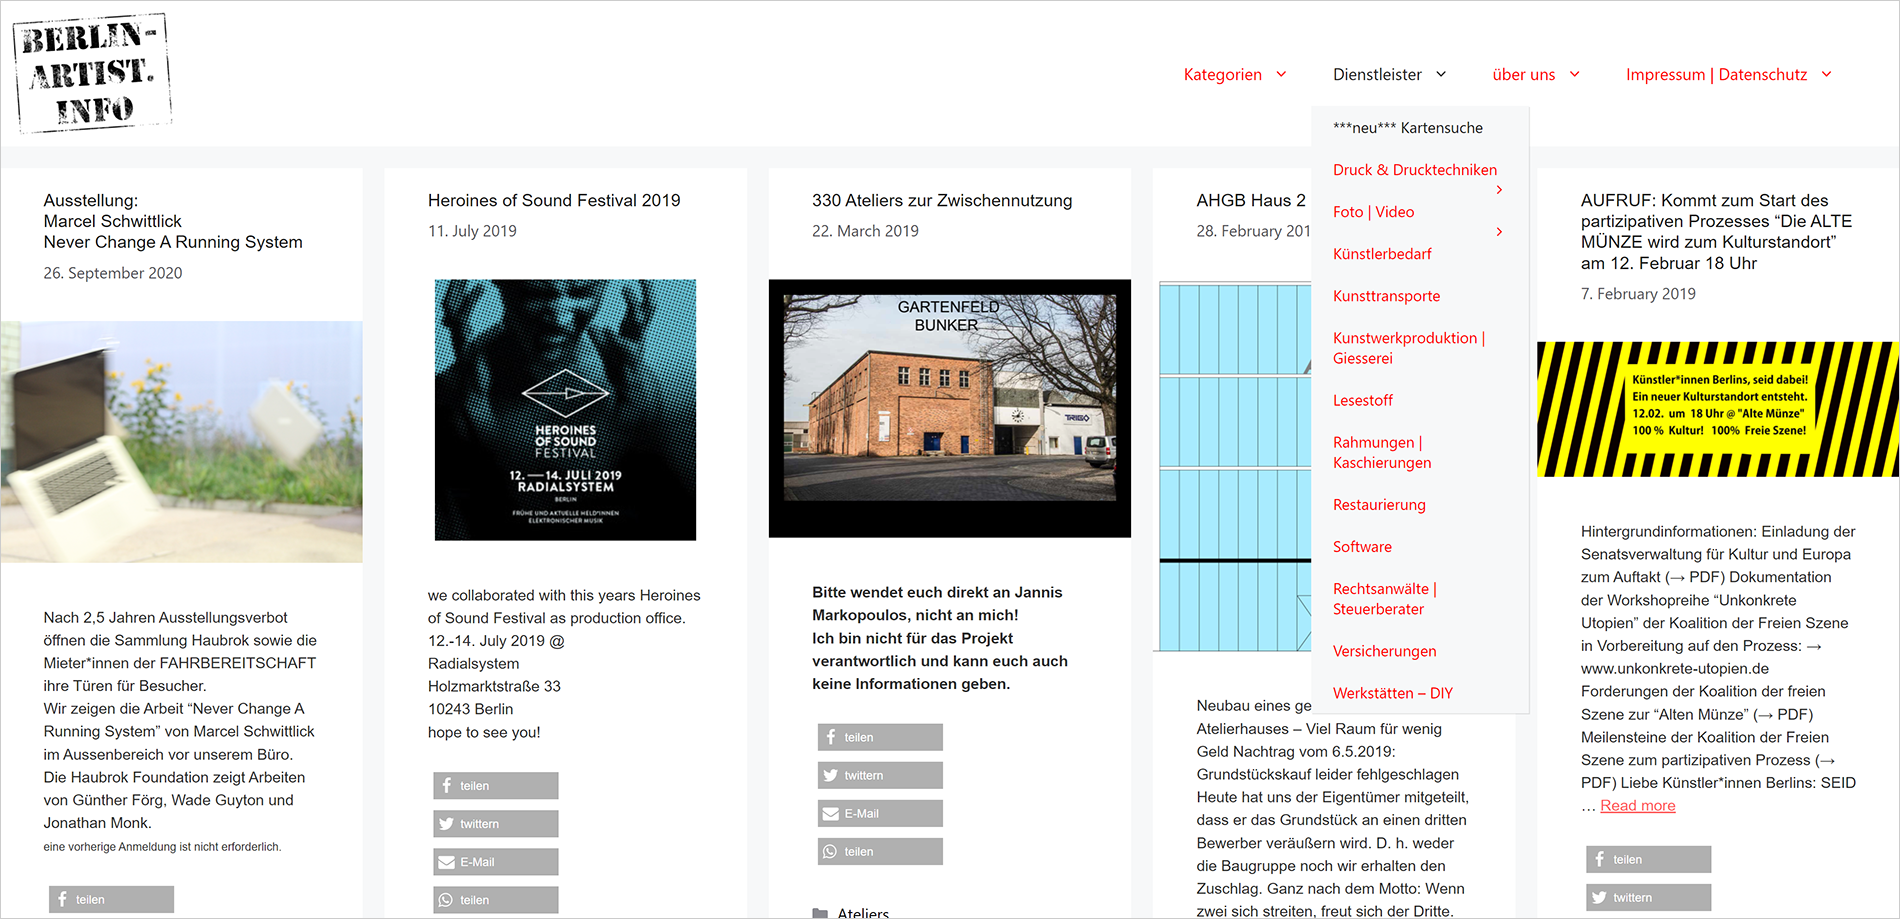 berlin-artist-info screenshot